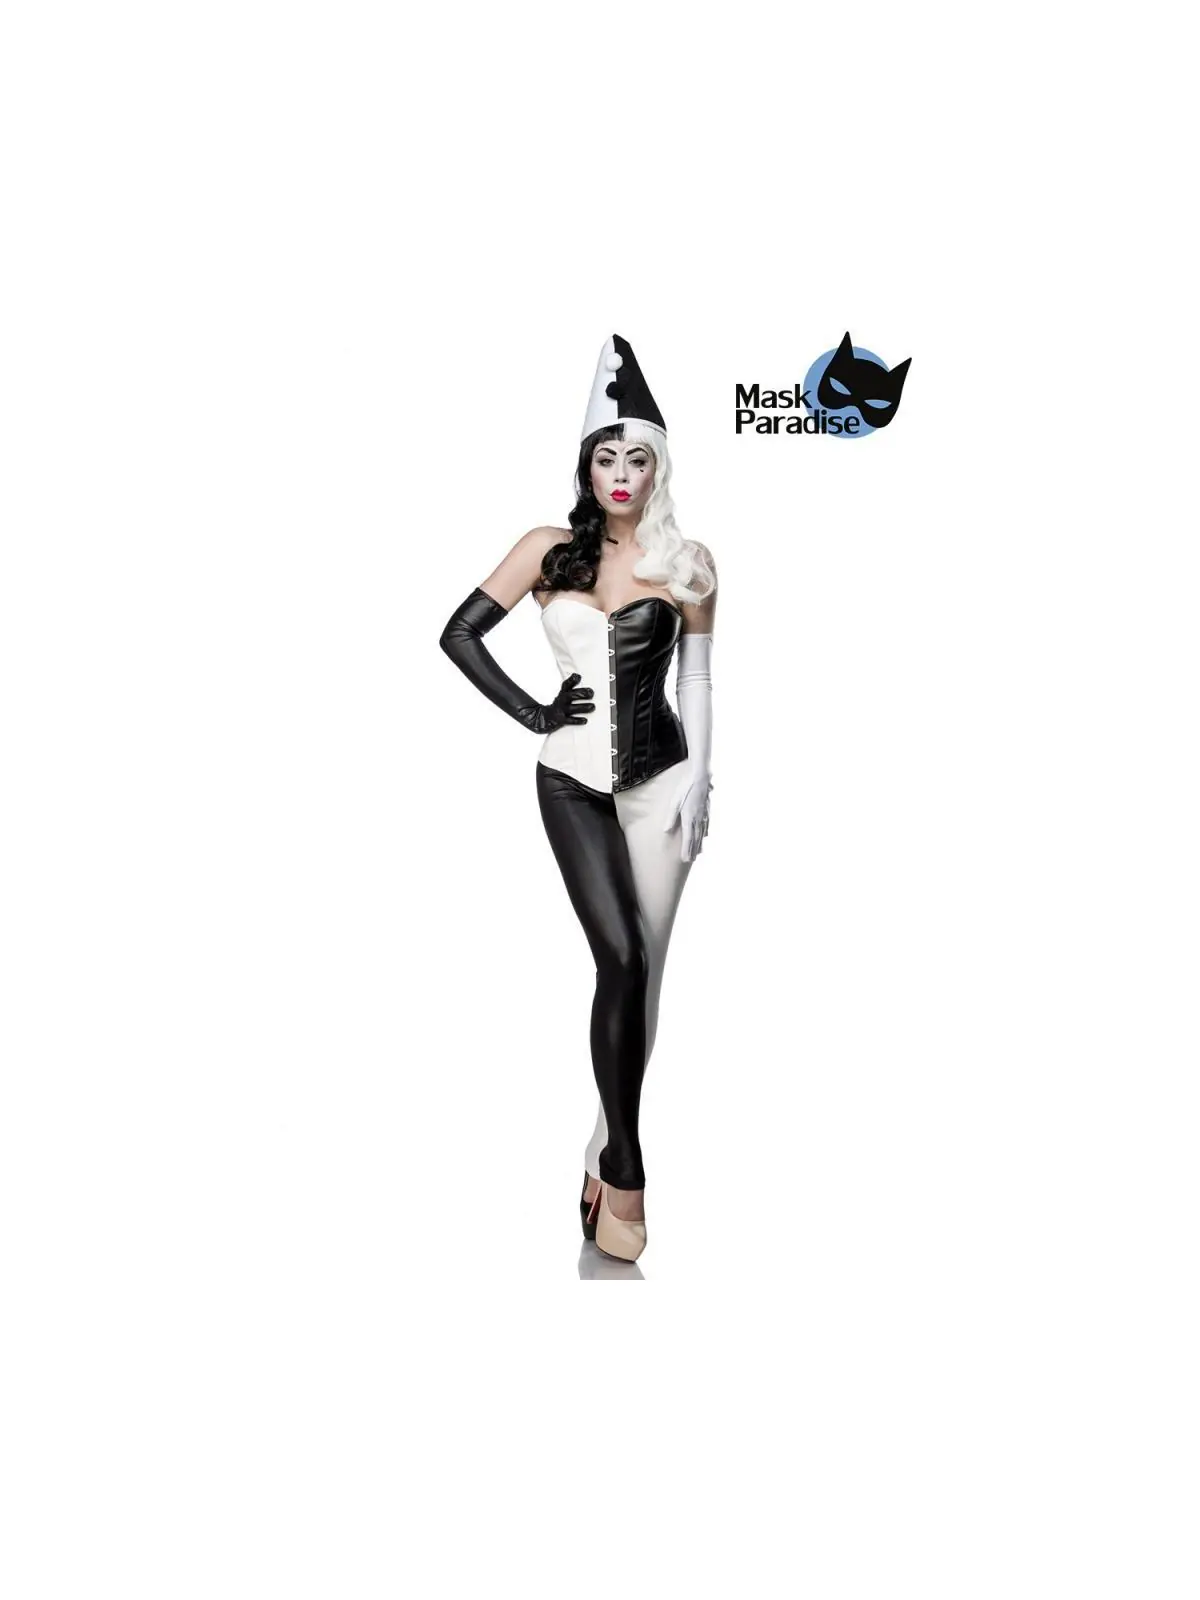 Harlekinkostüm: Classic Harlequin schwarz/weiß von Mask Paradise kaufen - Fesselliebe